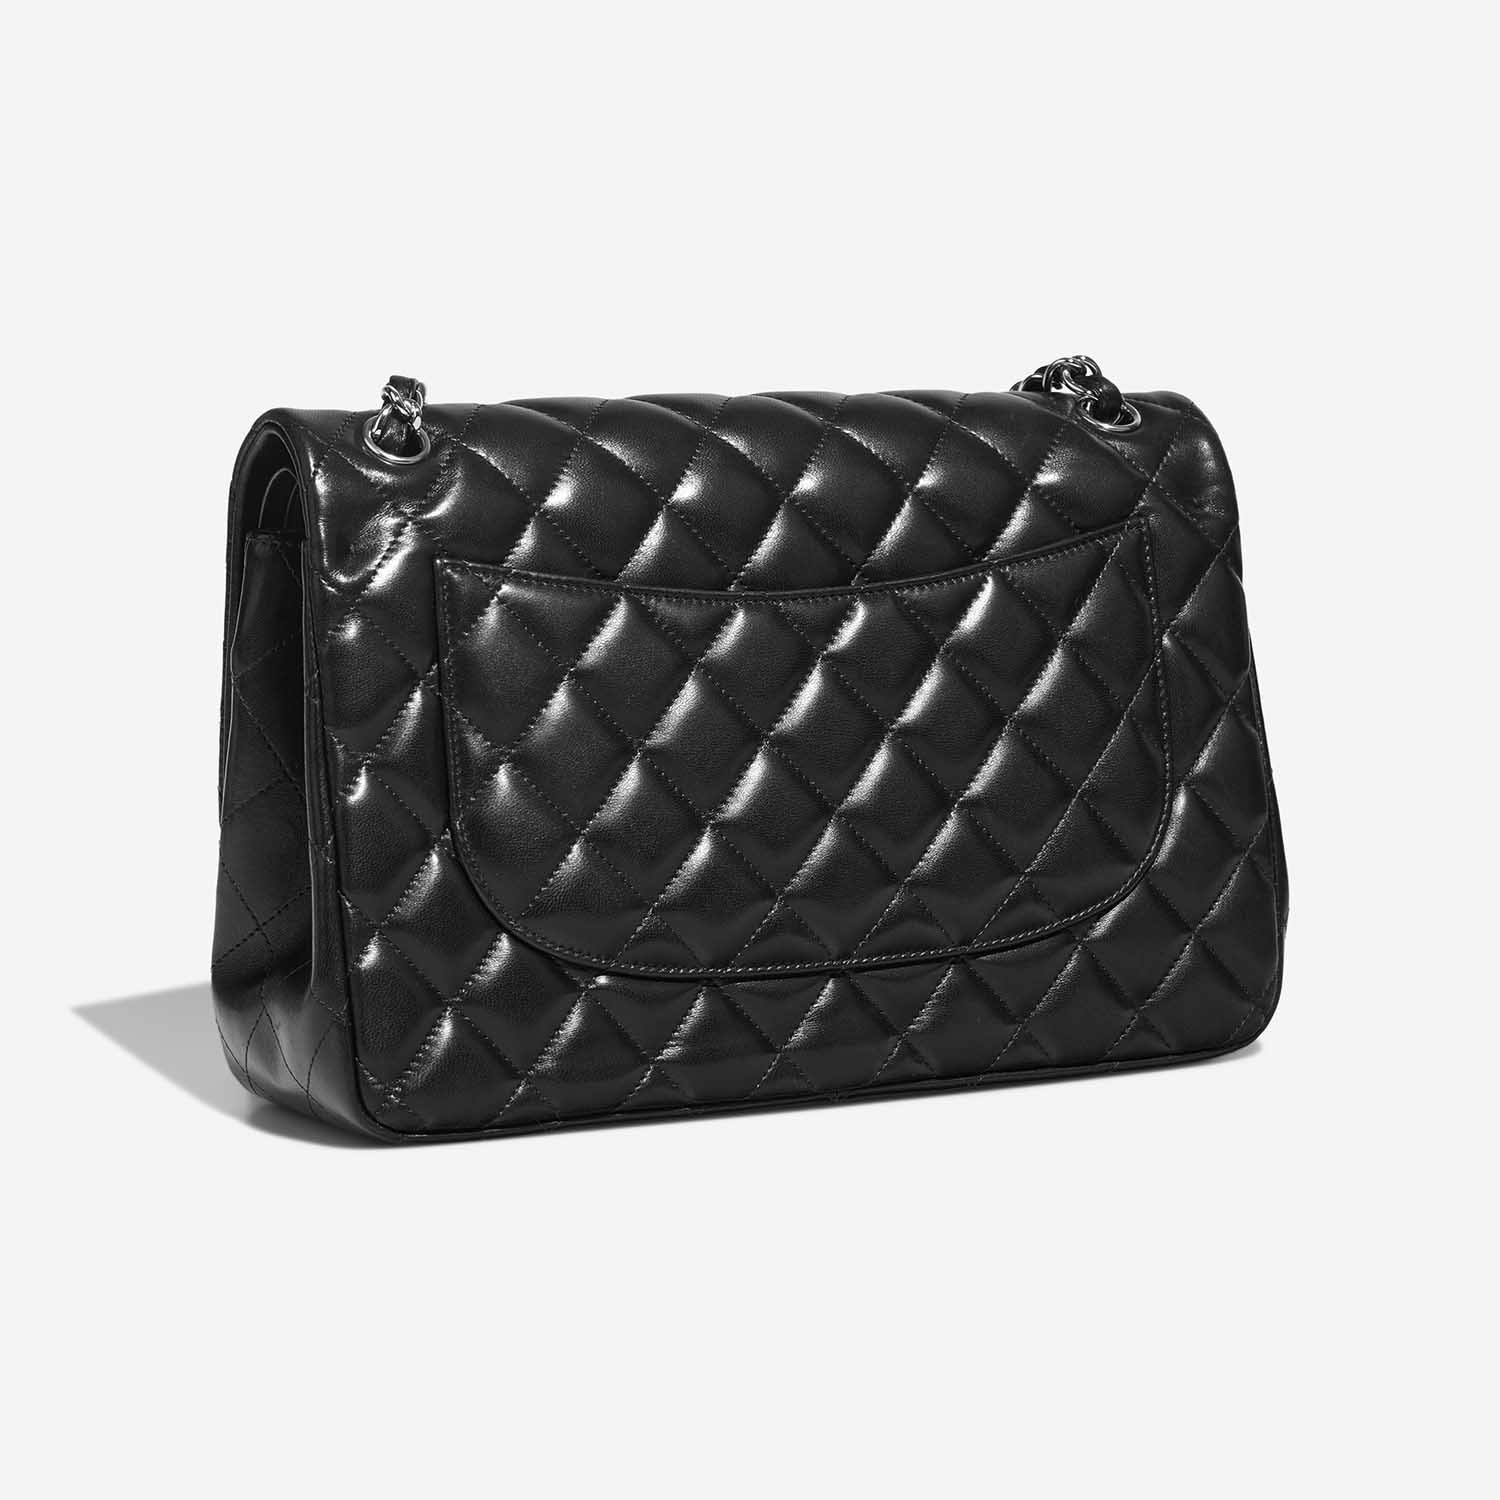 Chanel Timeless Jumbo Black Side Back | Verkaufen Sie Ihre Designer-Tasche auf Saclab.com